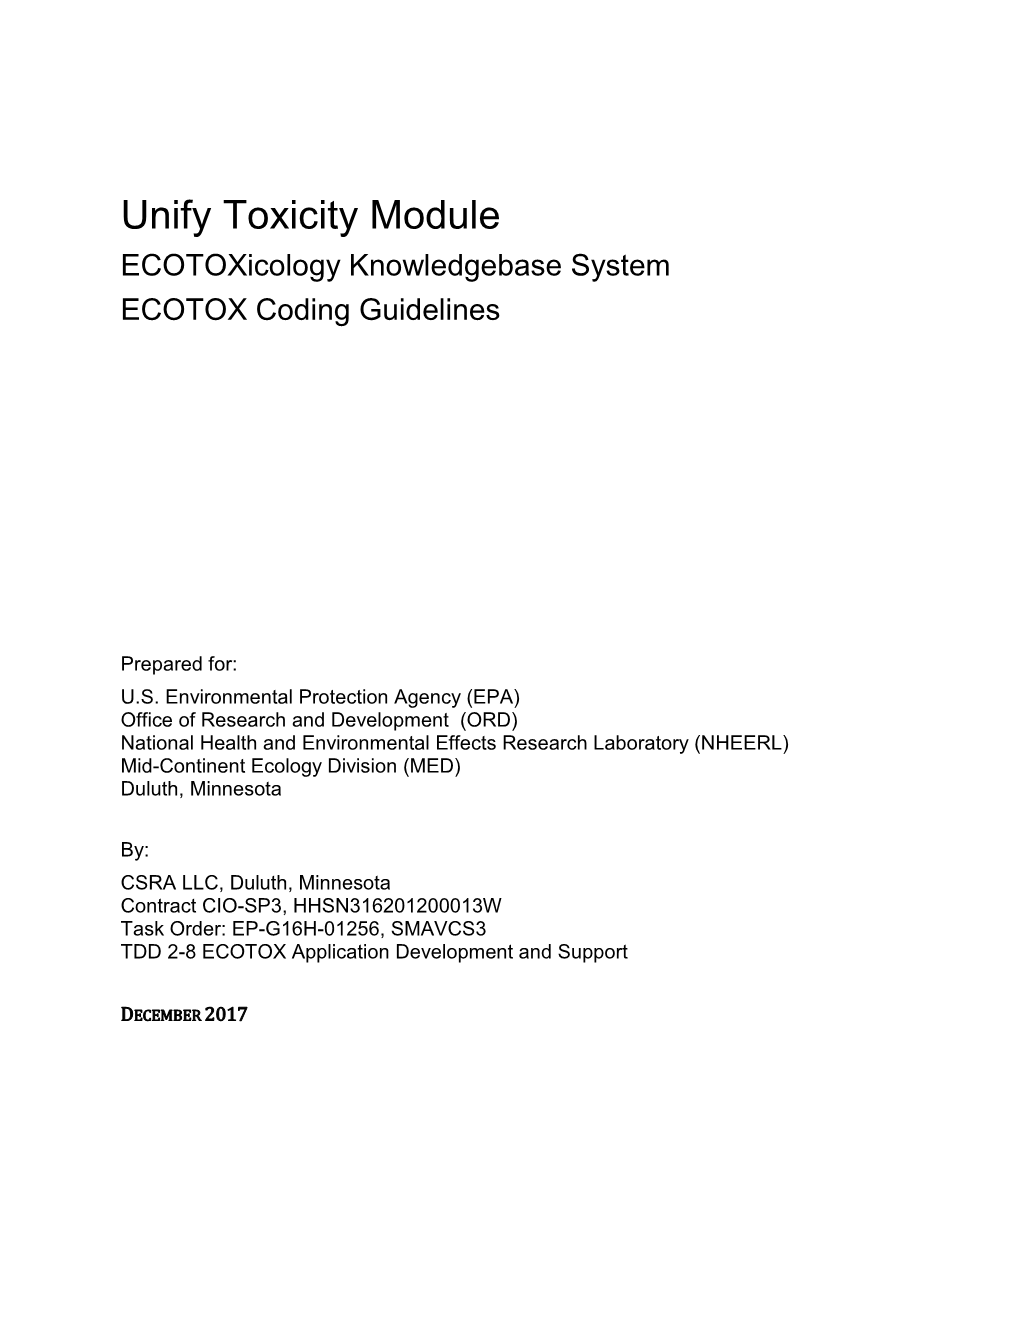 Ecotoxicology Database System